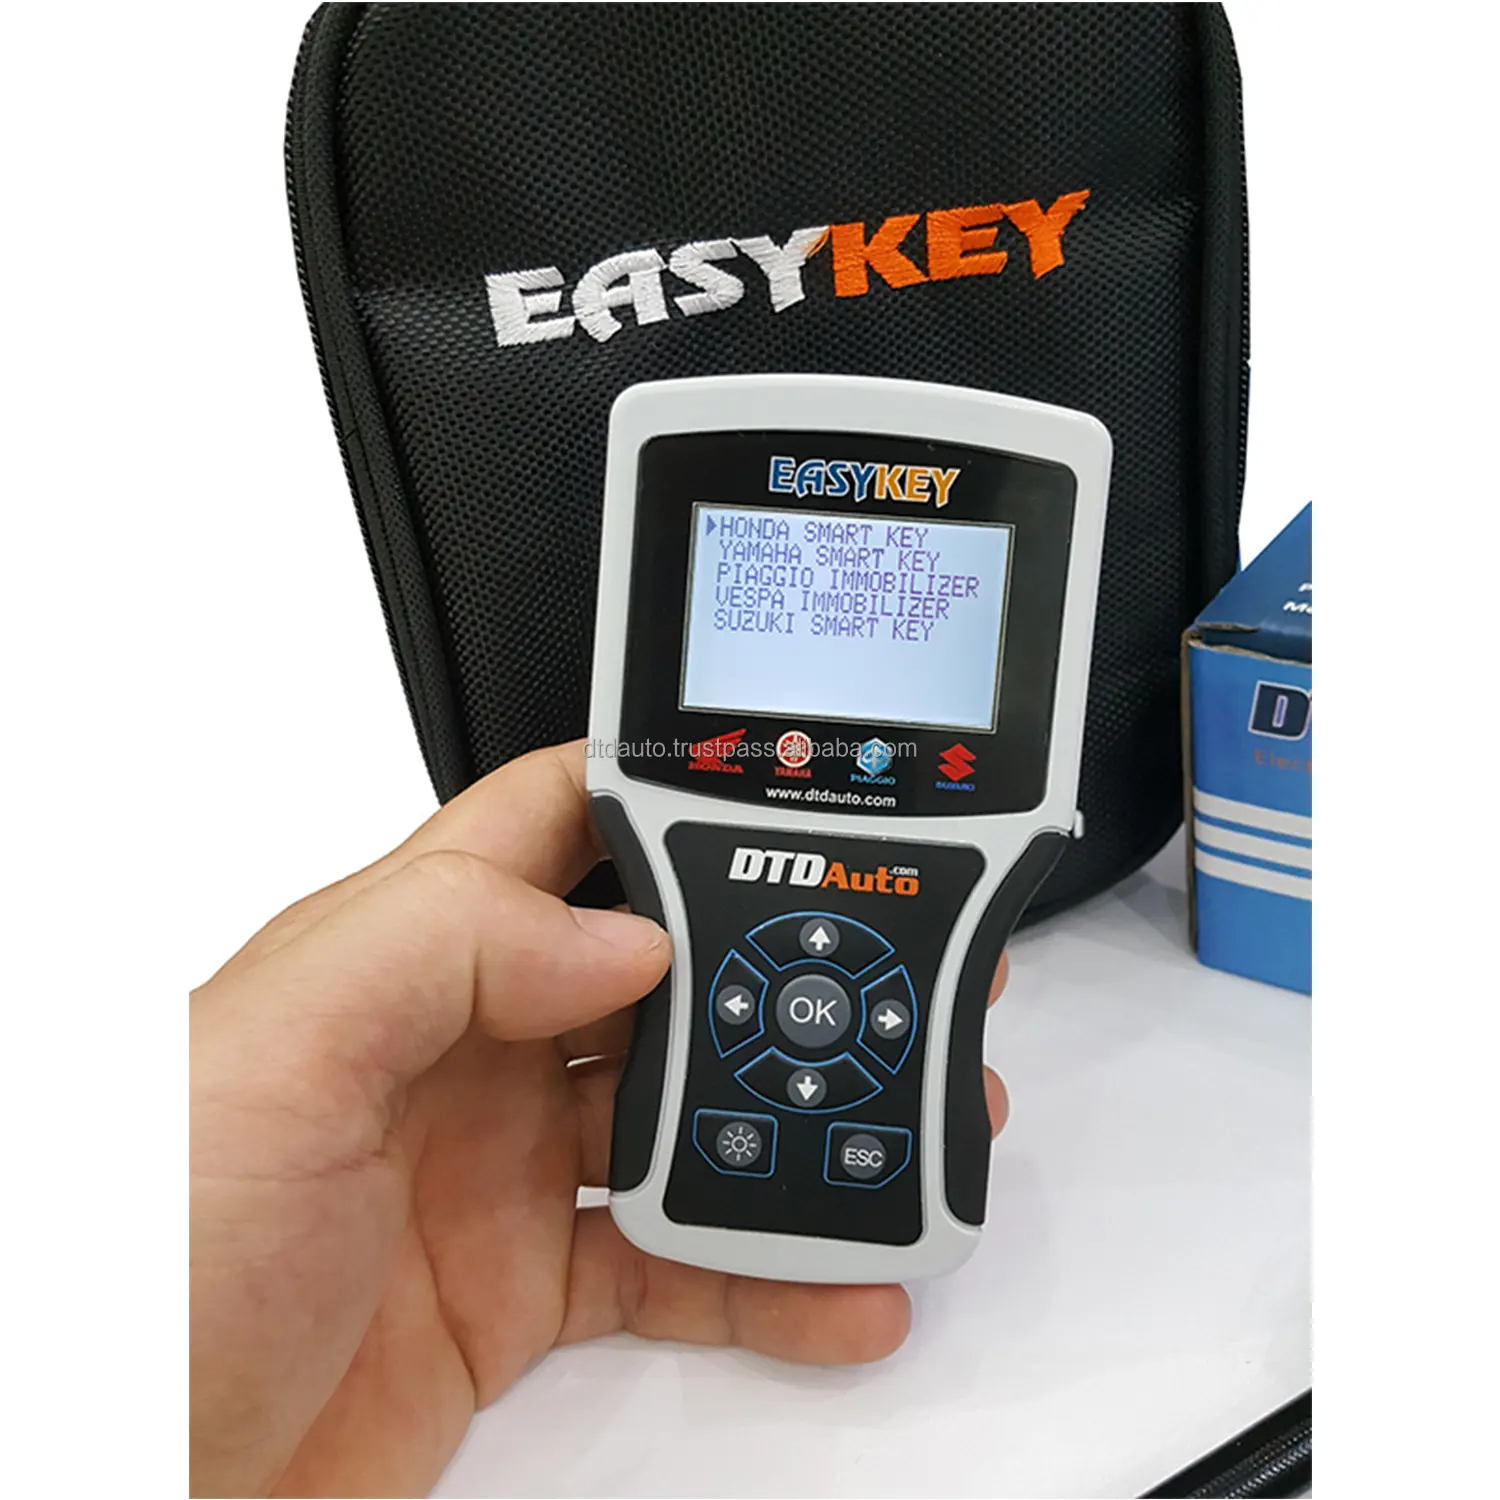 DTDAuto Easykey-Herramienta fácil para la programación de llaves electrónicas, resuelve problemas relacionados con situaciones de pérdida de llaves y agrega nuevas llaves